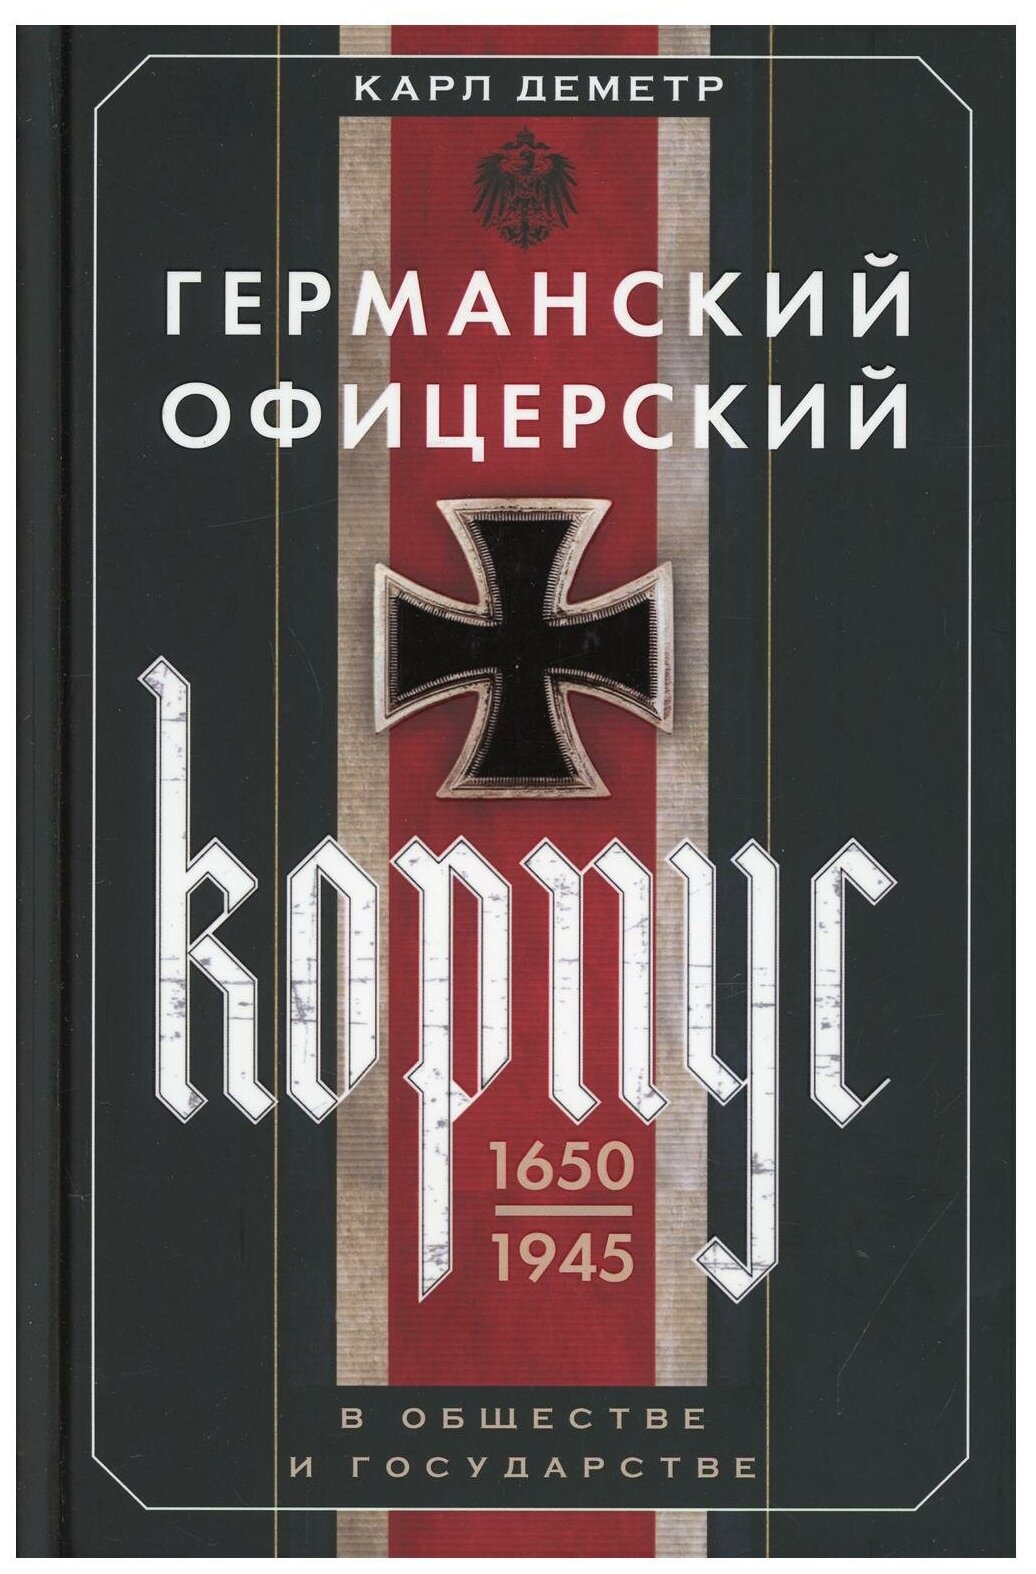 Германский офицерский корпус 1650-1945 гг. - фото №1